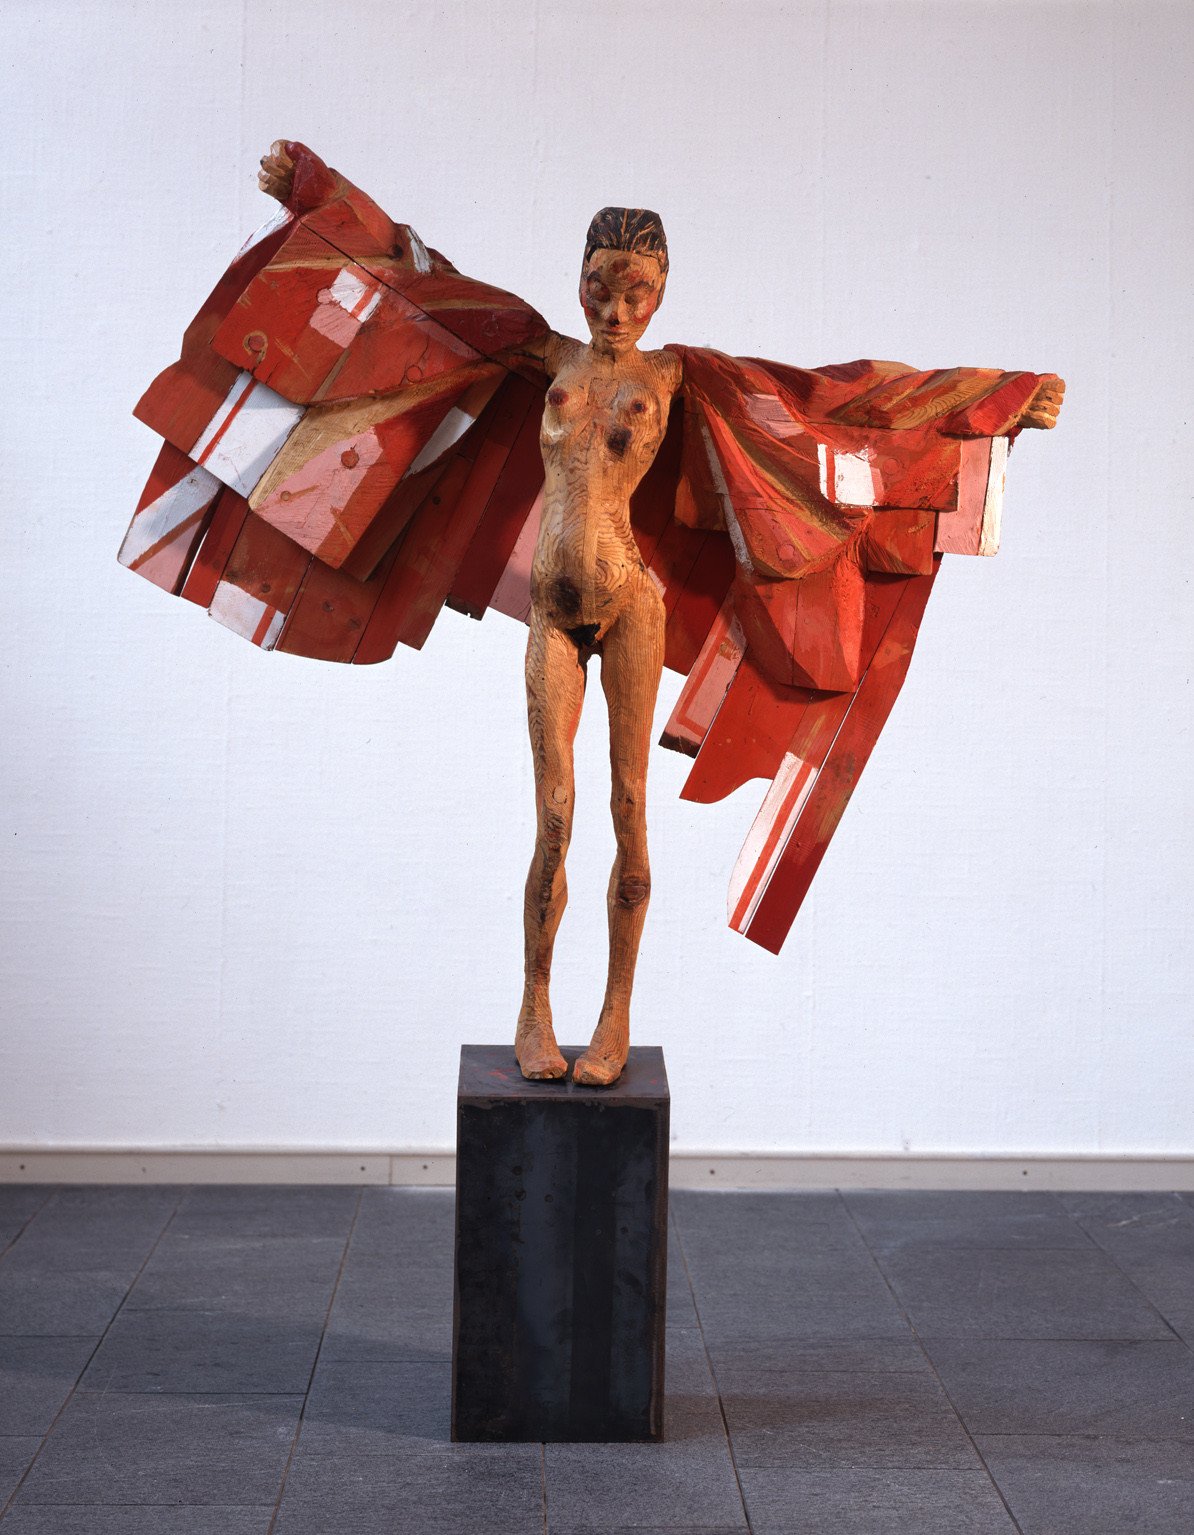 Fliegen, 1988, Holz, teilweise bemalt, und Stahl (Sockel); Leihgabe des Förderkreises für die Kunsthalle Mannheim e.V. seit 1989; © Hans Scheib, Kunsthalle Mannheim